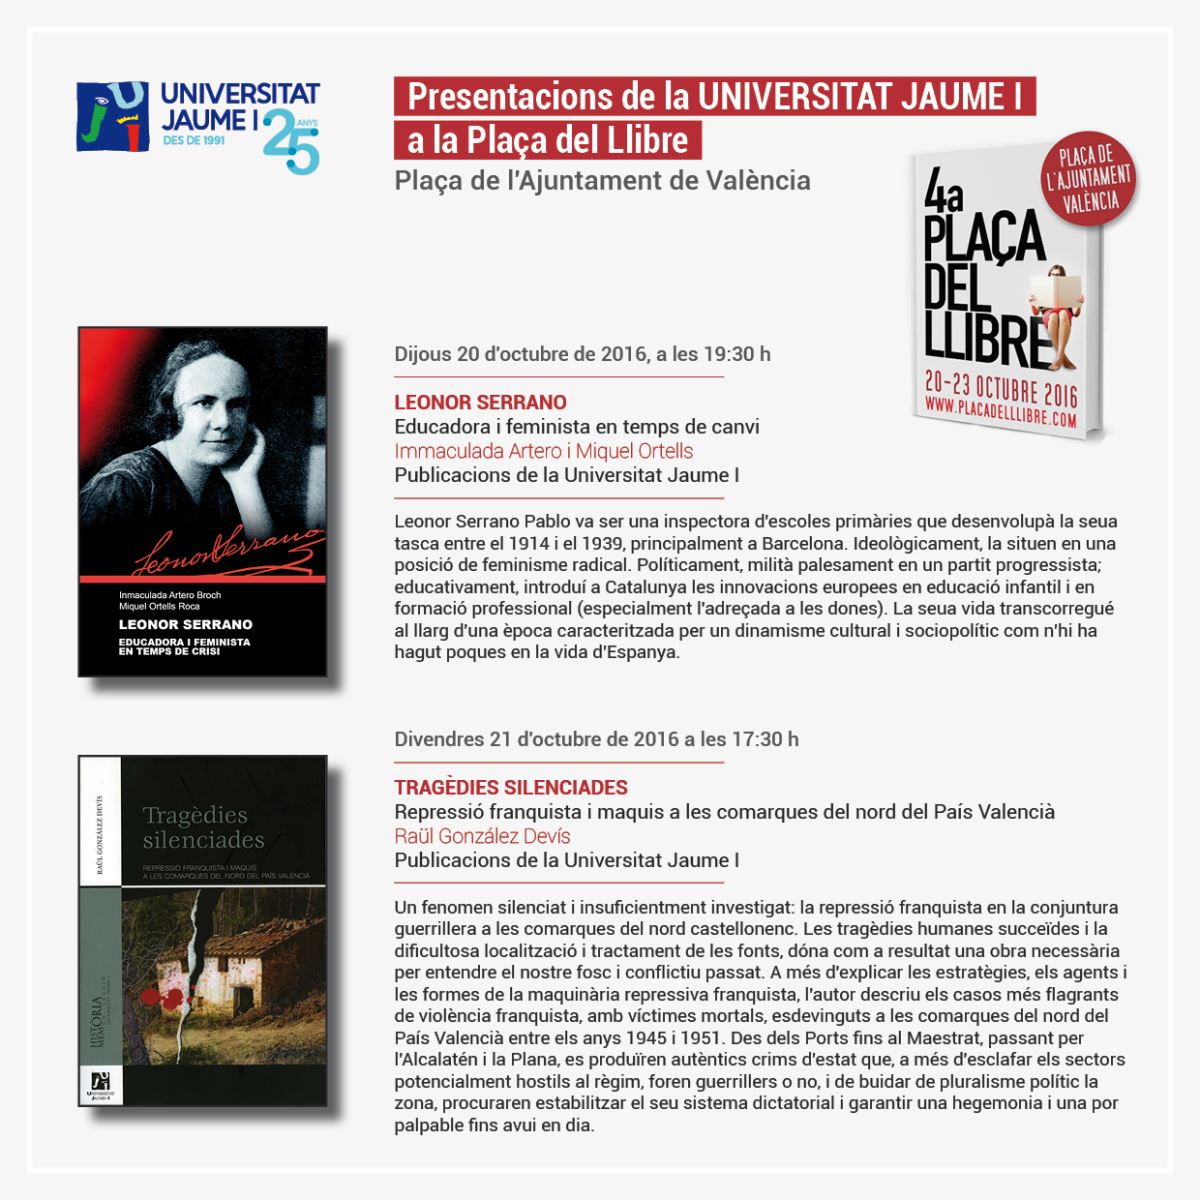 Publicacions de la Universitat Jaume I presenta dos de sus novedades en la Plaça del Llibre 2016 de Valencia